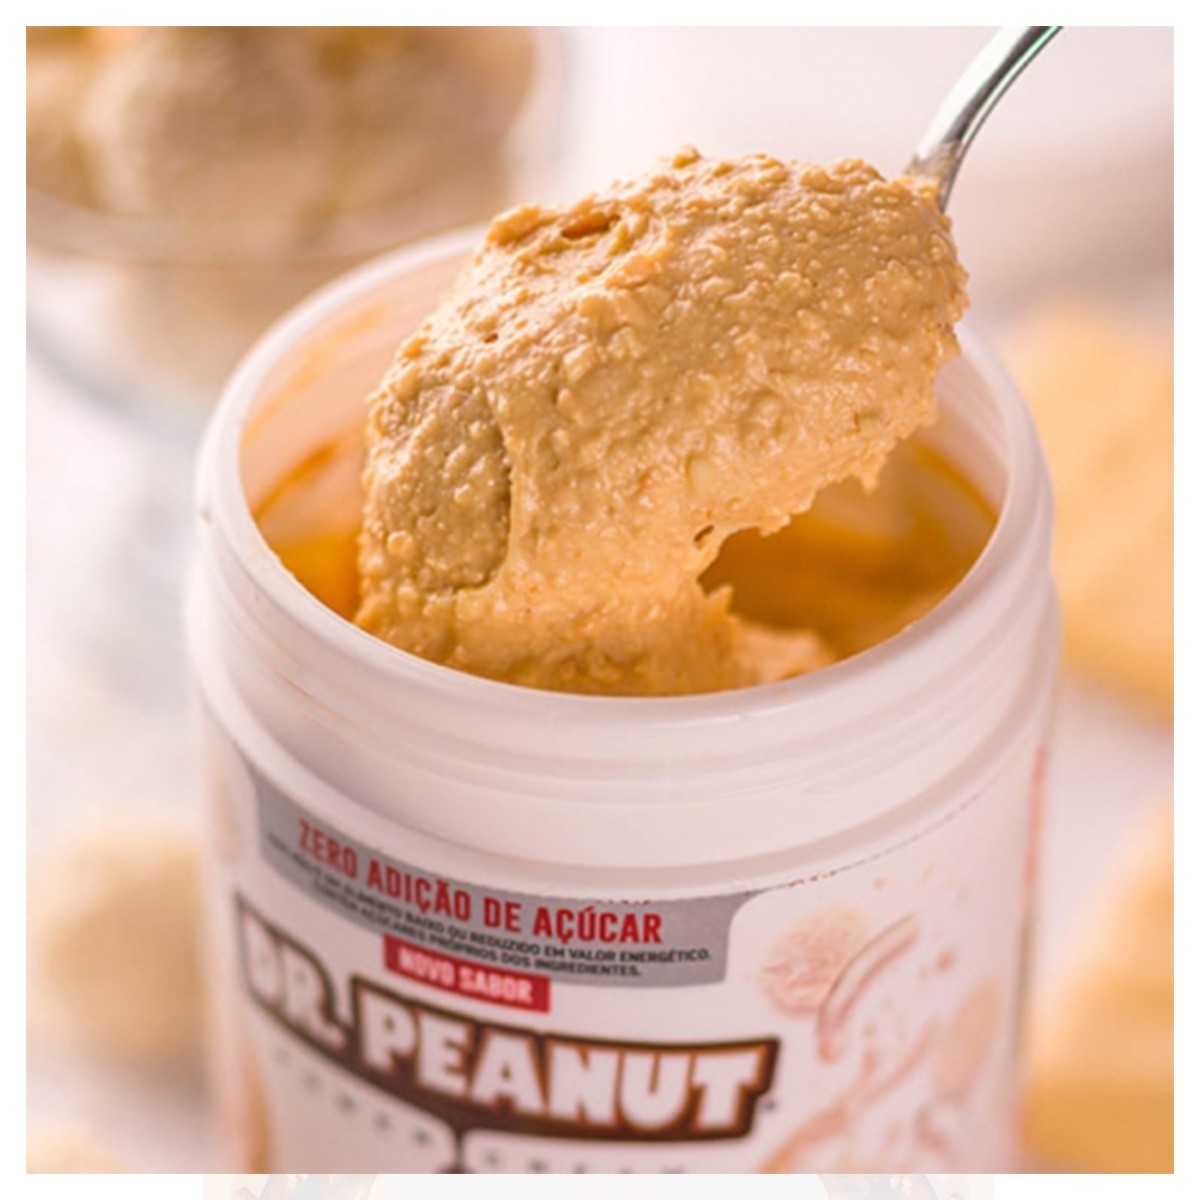 Pasta de Amendoim sabor Cookies & Cream - Dr. Peanut